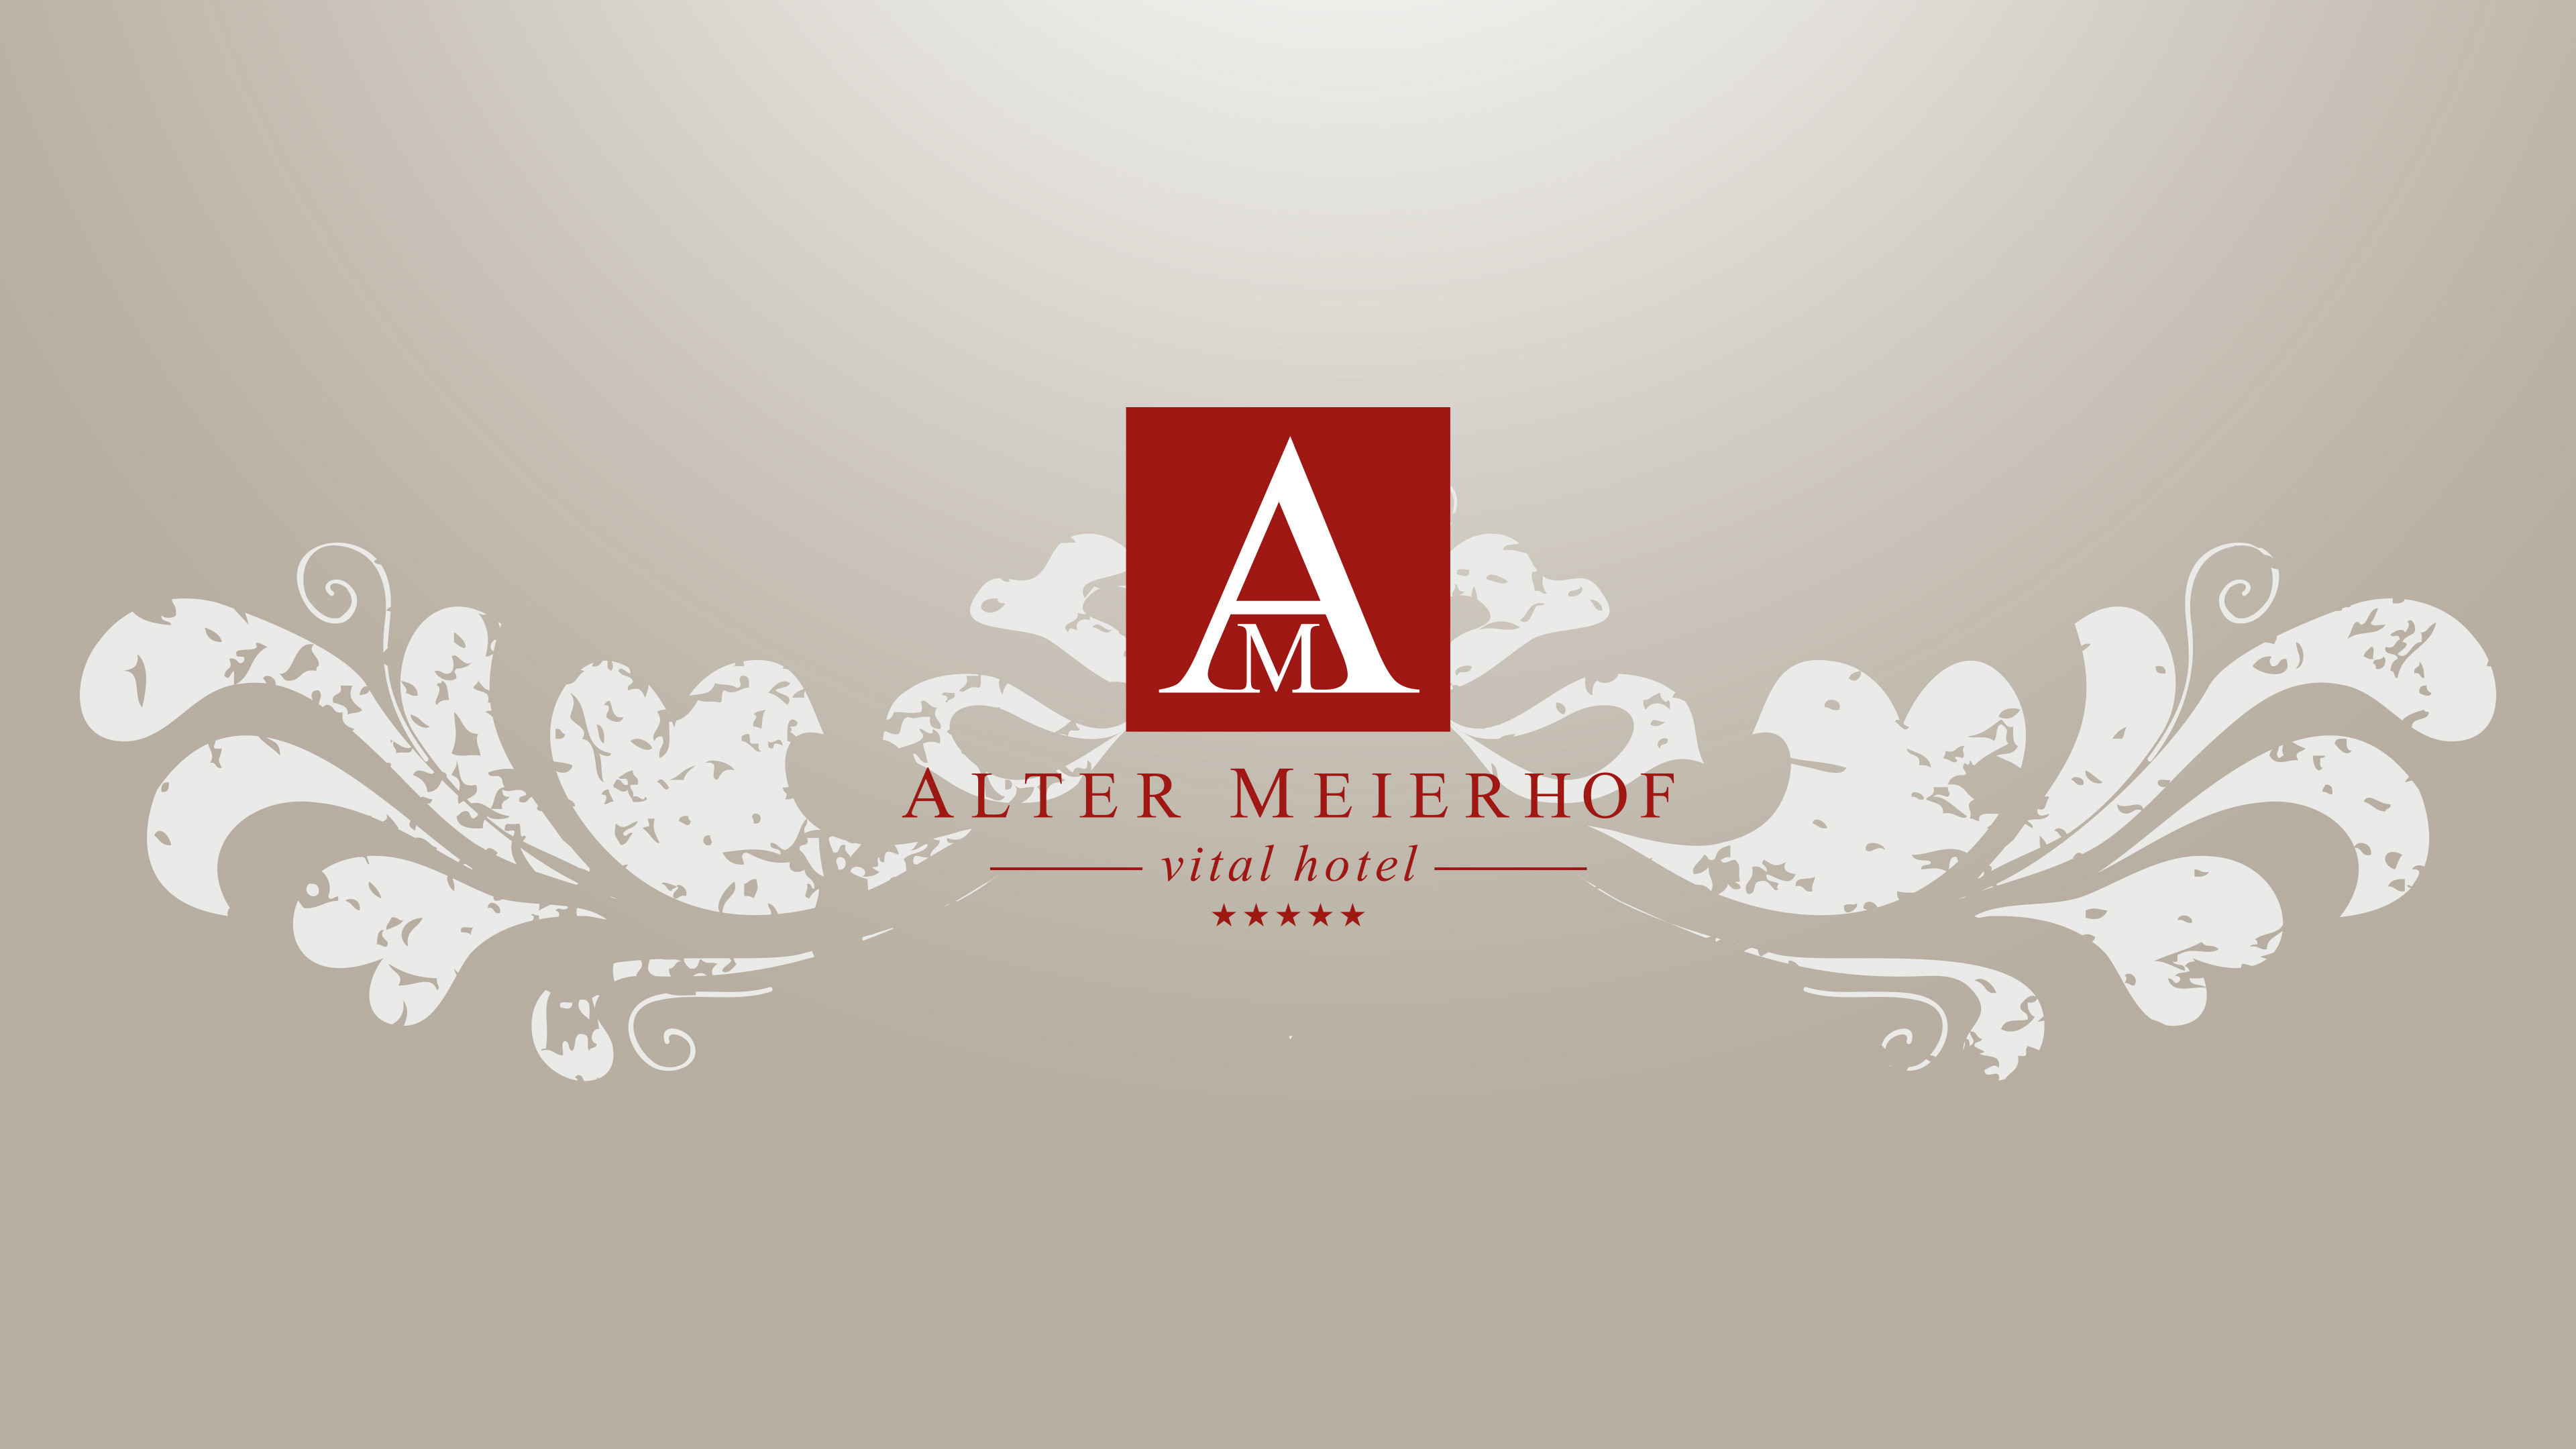 Weinrotes Logo mit großem A und kleinem M für das vitalhotel Alter Meierhof auf beigem Hintergrund mit weißem Blumenmuster